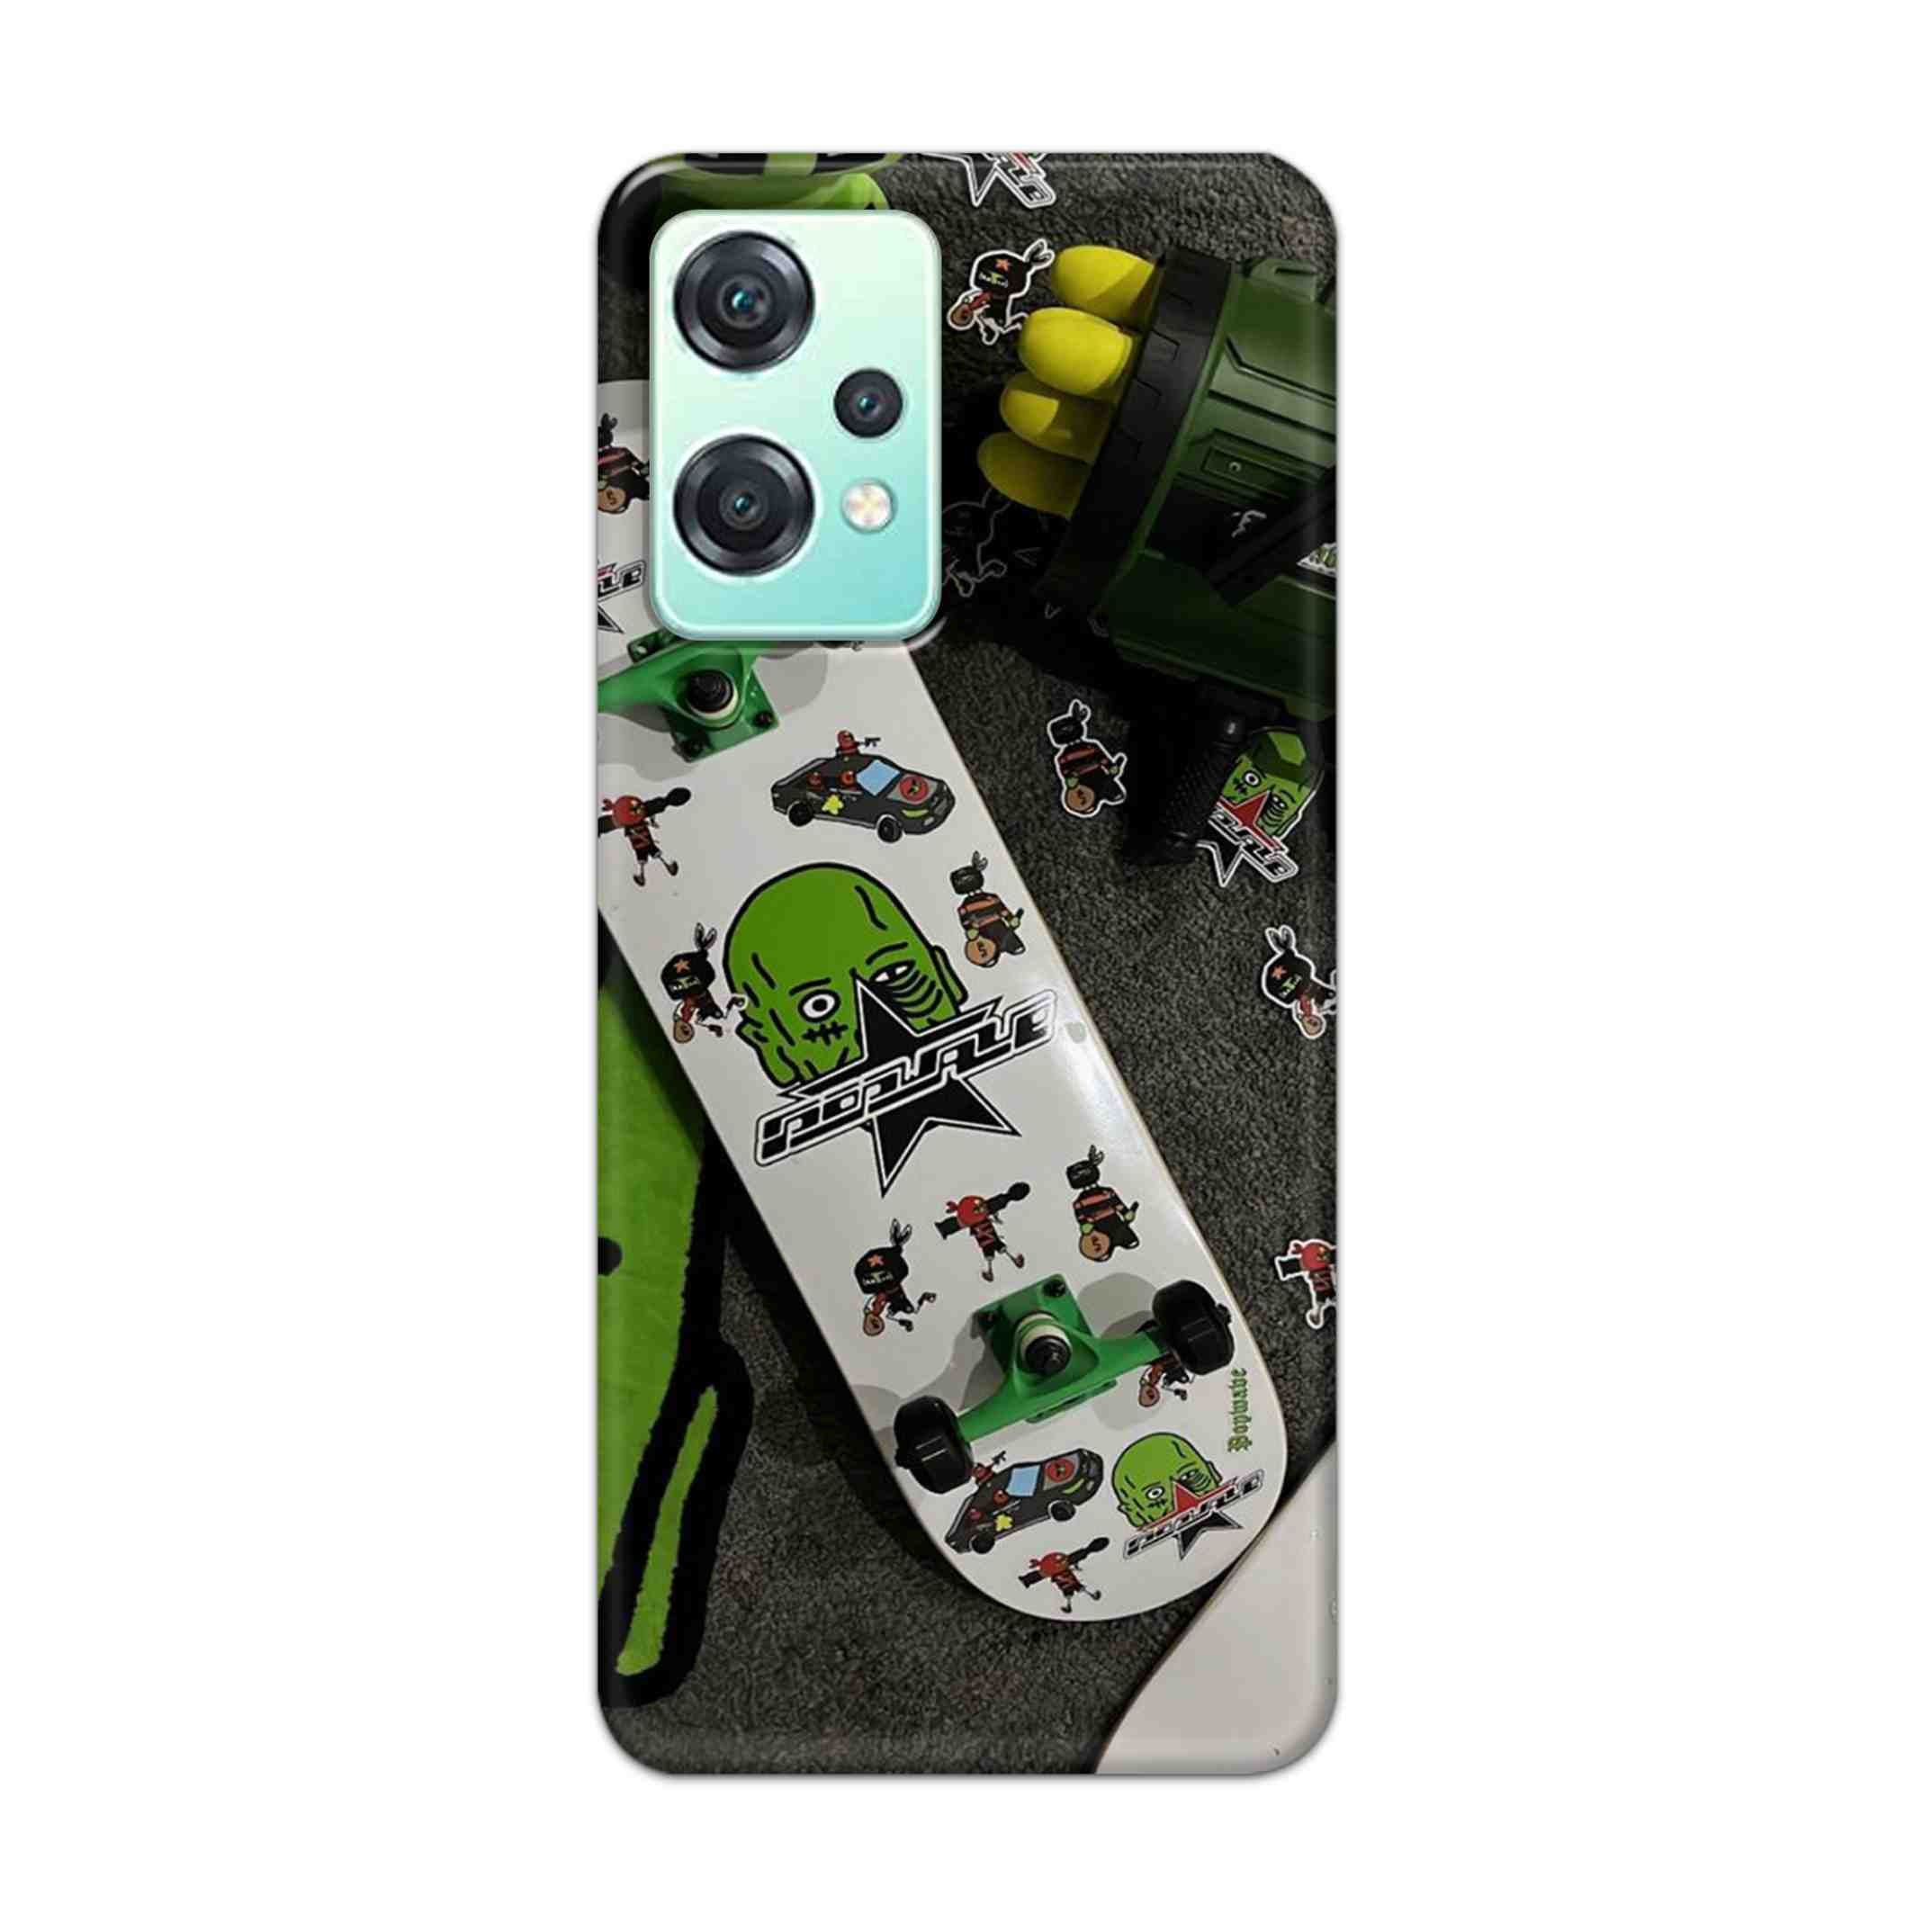 Buy Hulk Skateboard Hard Back Mobile Phone Case Cover For OnePlus Nord CE 2 Lite 5G Online